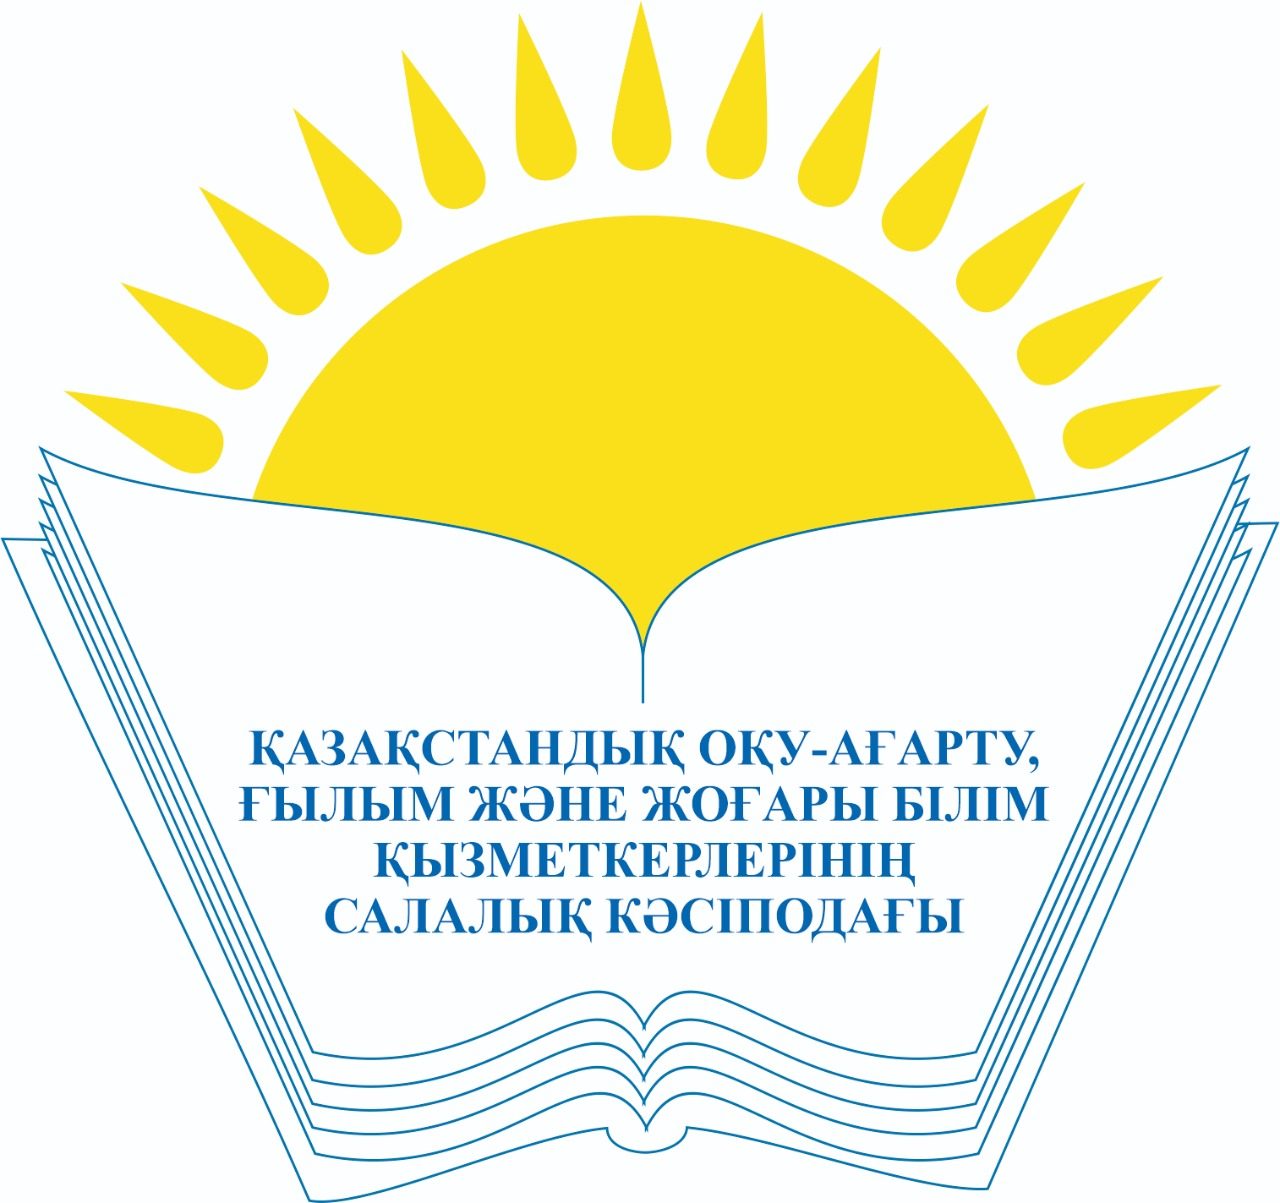 Павлодарская областная организация профсоюза работников образования и науки